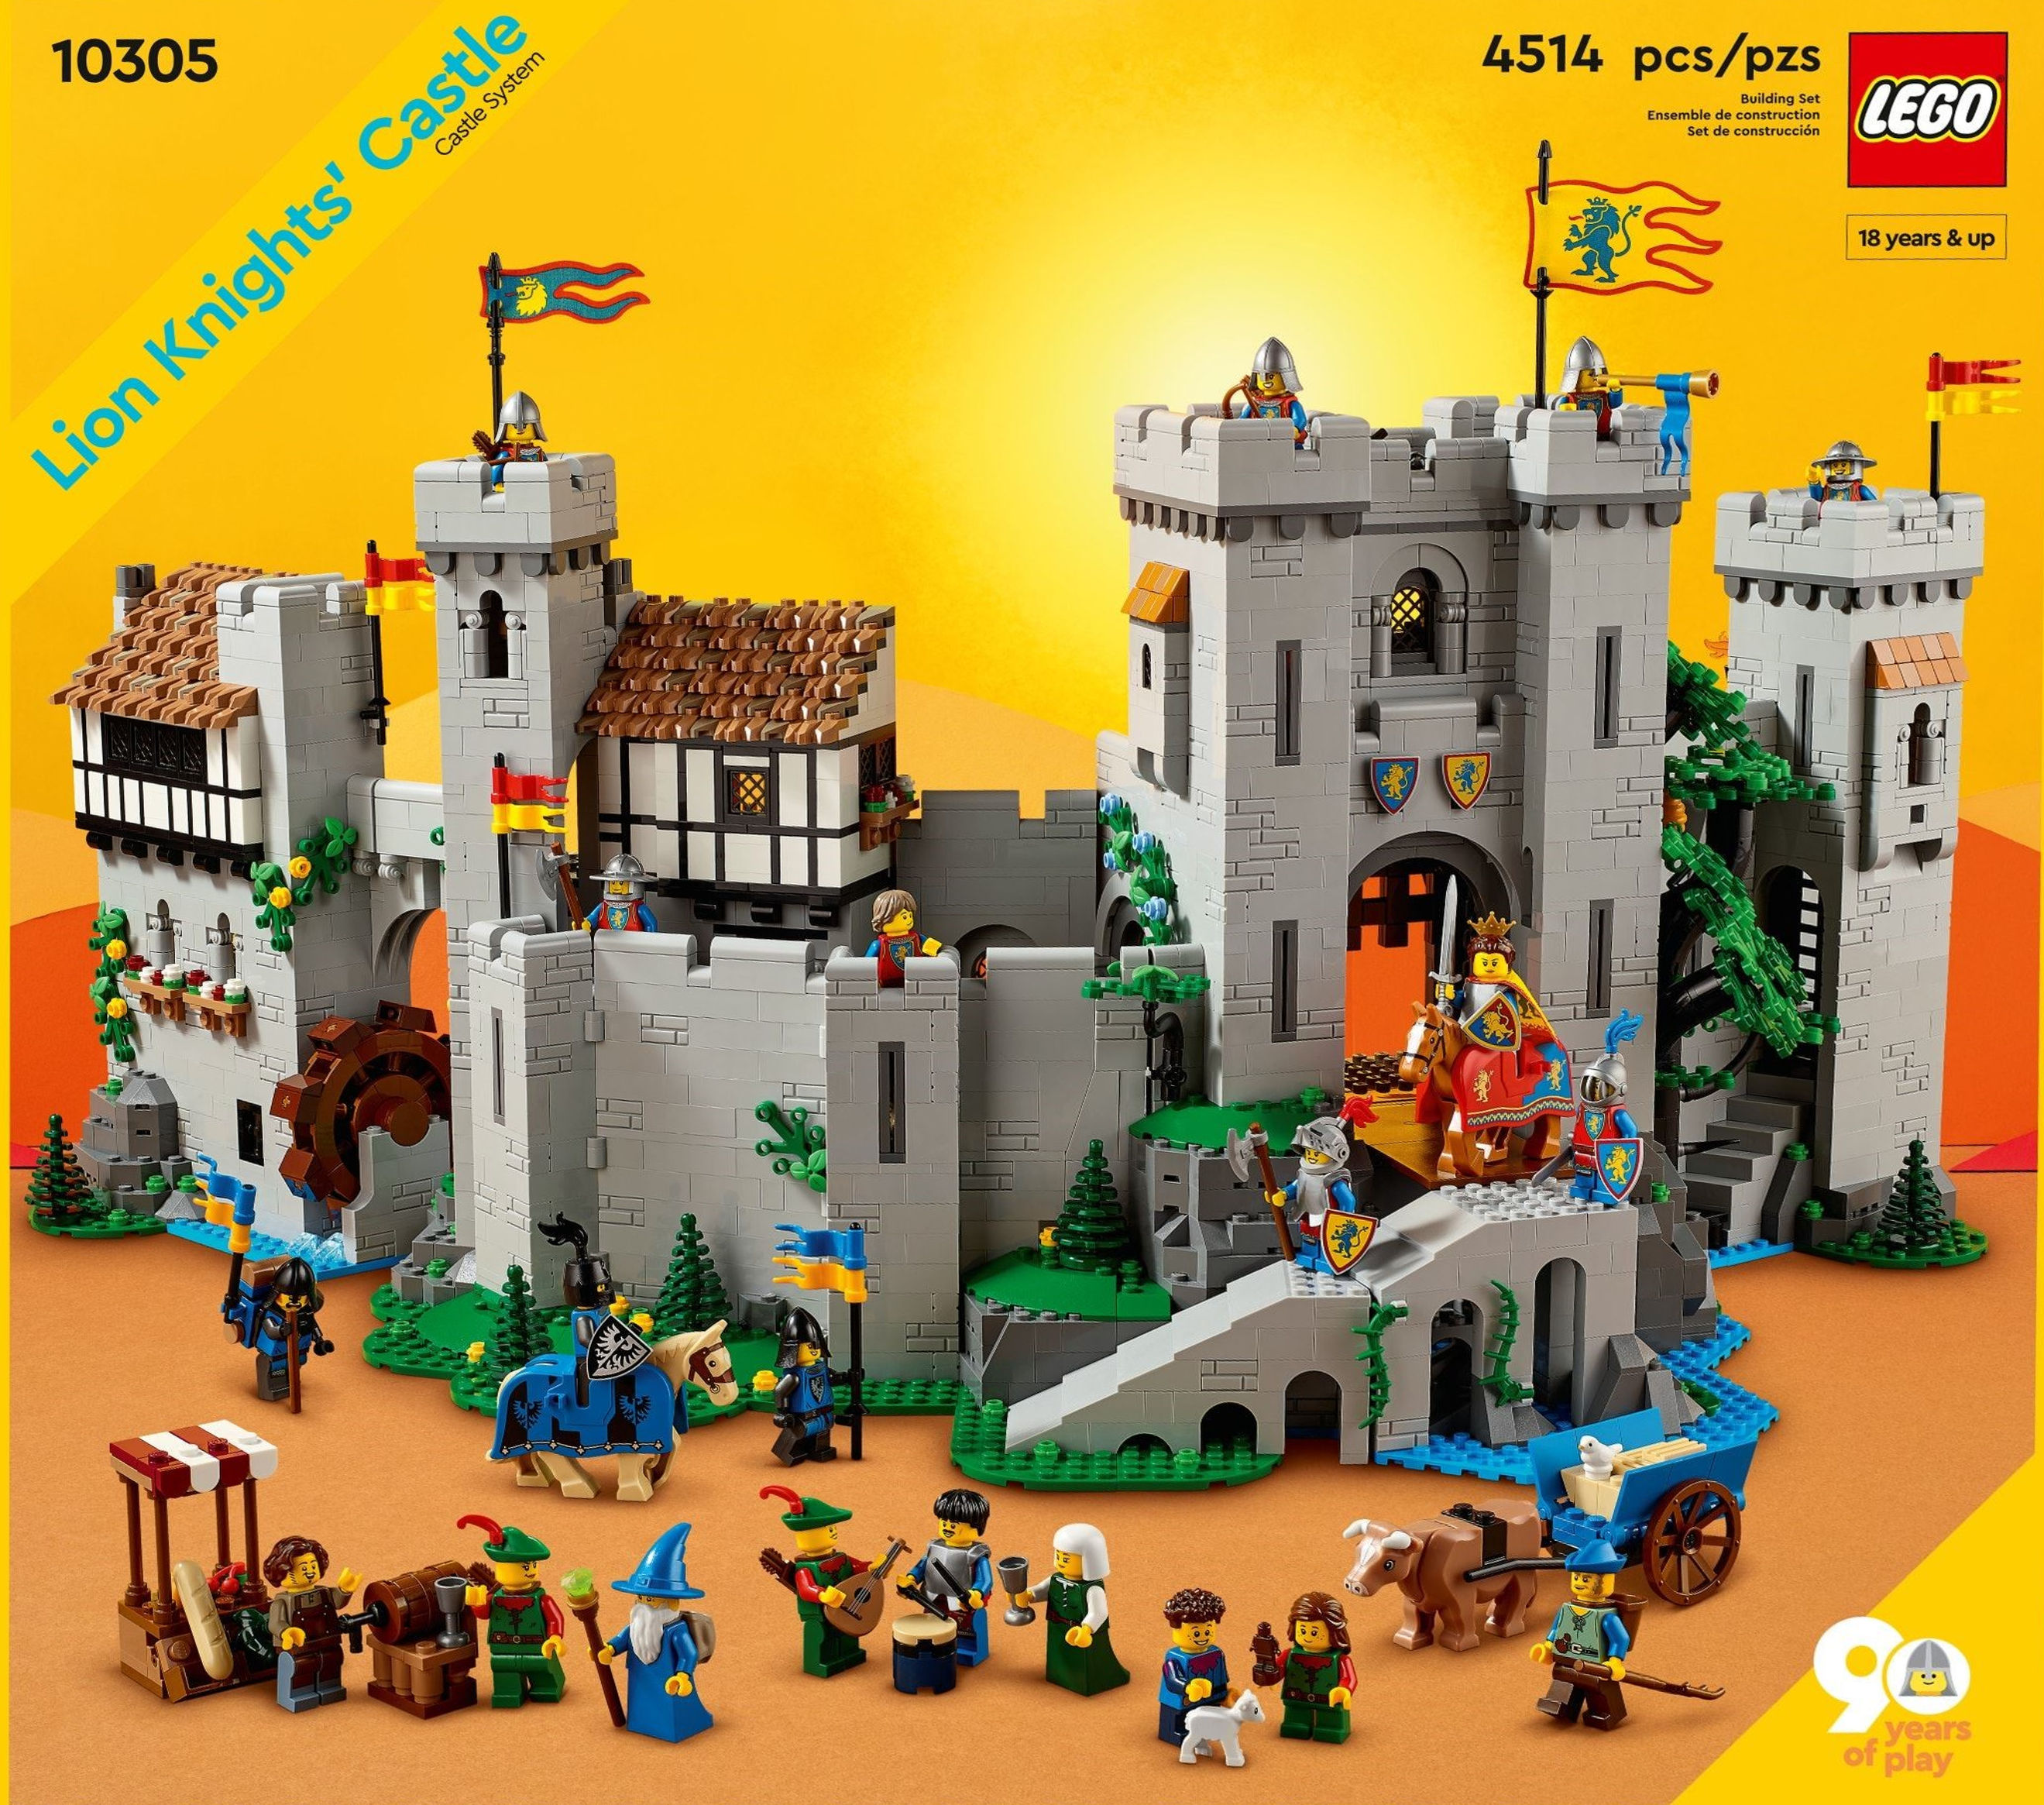 LEGO 10305 Castle review Brickset